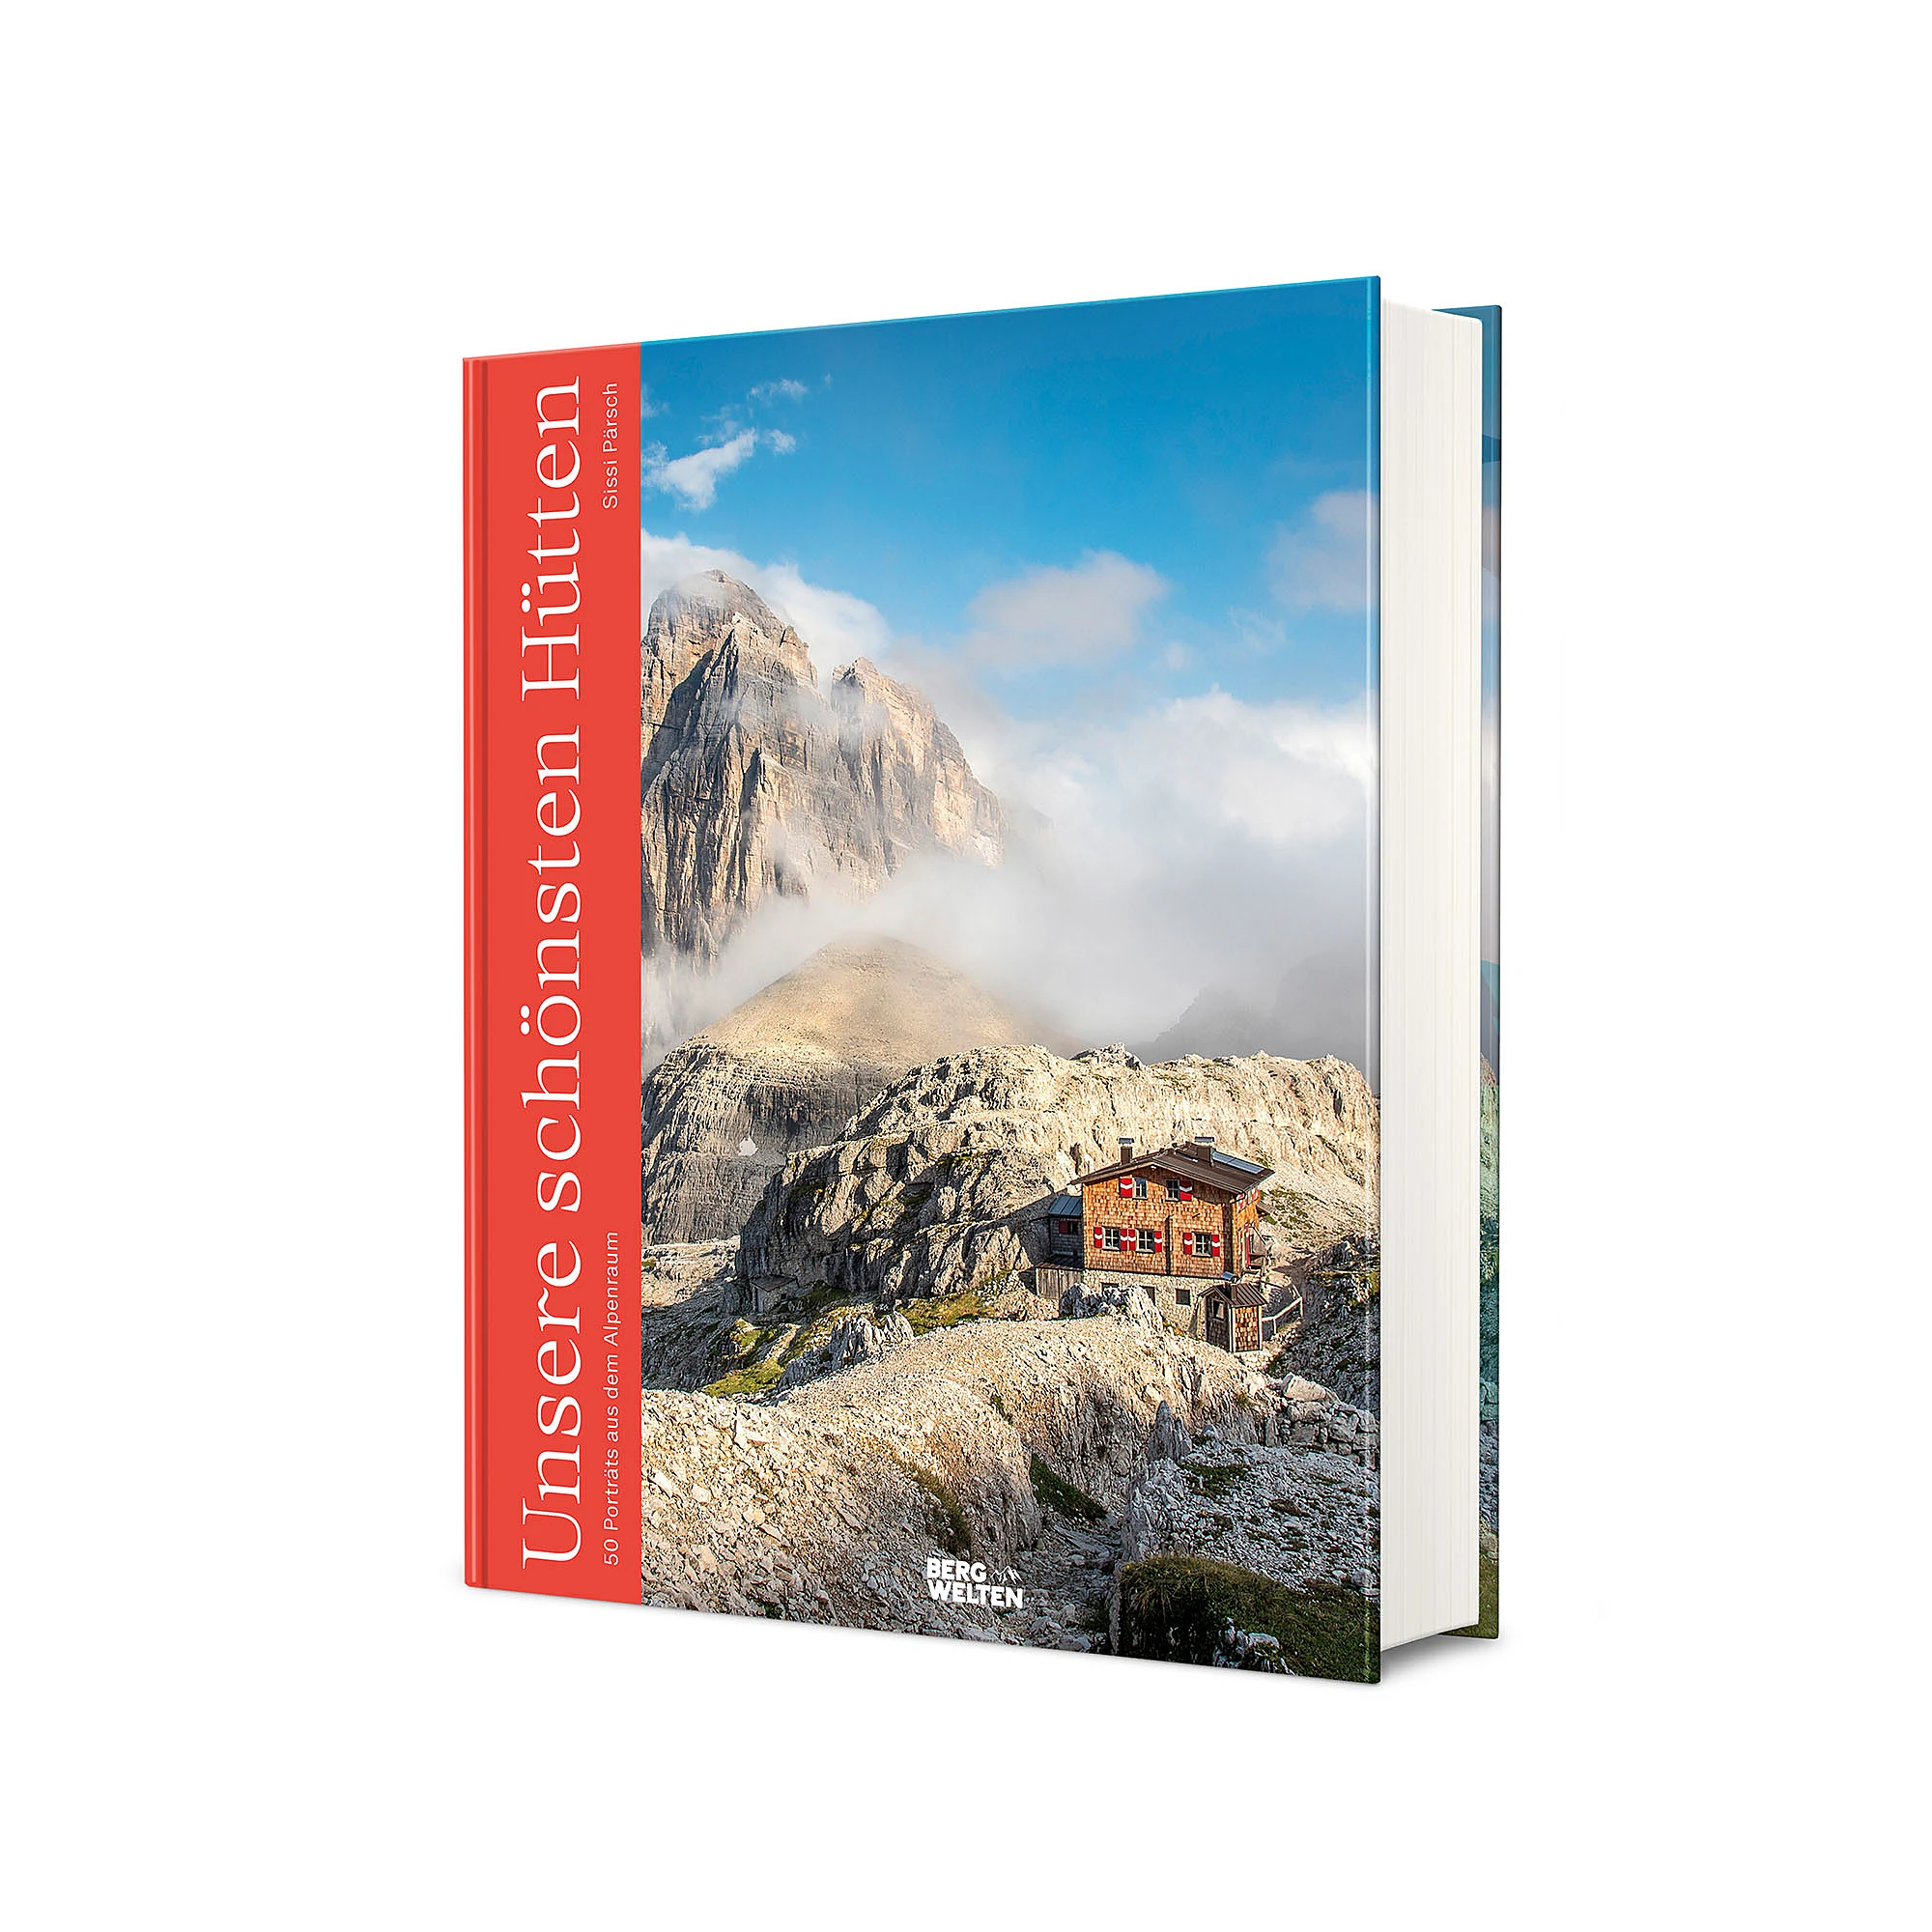 Das Bergwelten-Buch „Unsere schönsten Hütten“, erschienen im Benevento Verlag